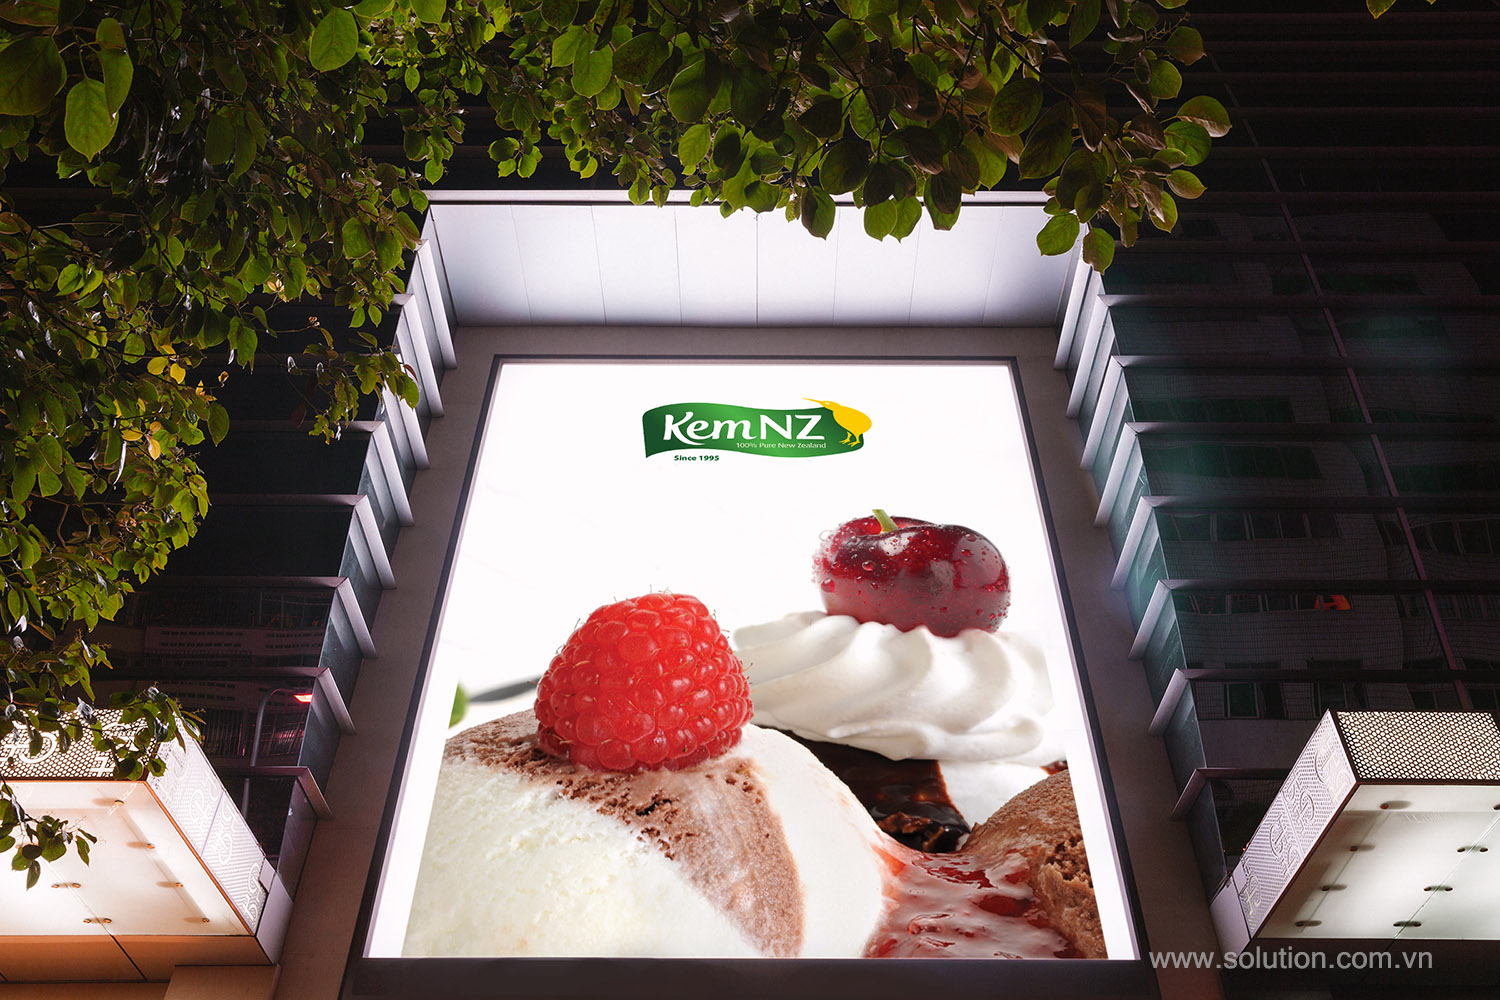 Sự ngọt ngào từ cửa hàng kem New Zealand sẽ khiến bạn khó có thể bỏ qua. Với biển quảng cáo được thiết kế đầy màu sắc, chúng tôi tiếp tục gửi gắm thông điệp thơm ngon của kem vào thị giác của khách hàng, hứa hẹn sẽ cung cấp cho bạn trải nghiệm mua sắm thú vị.